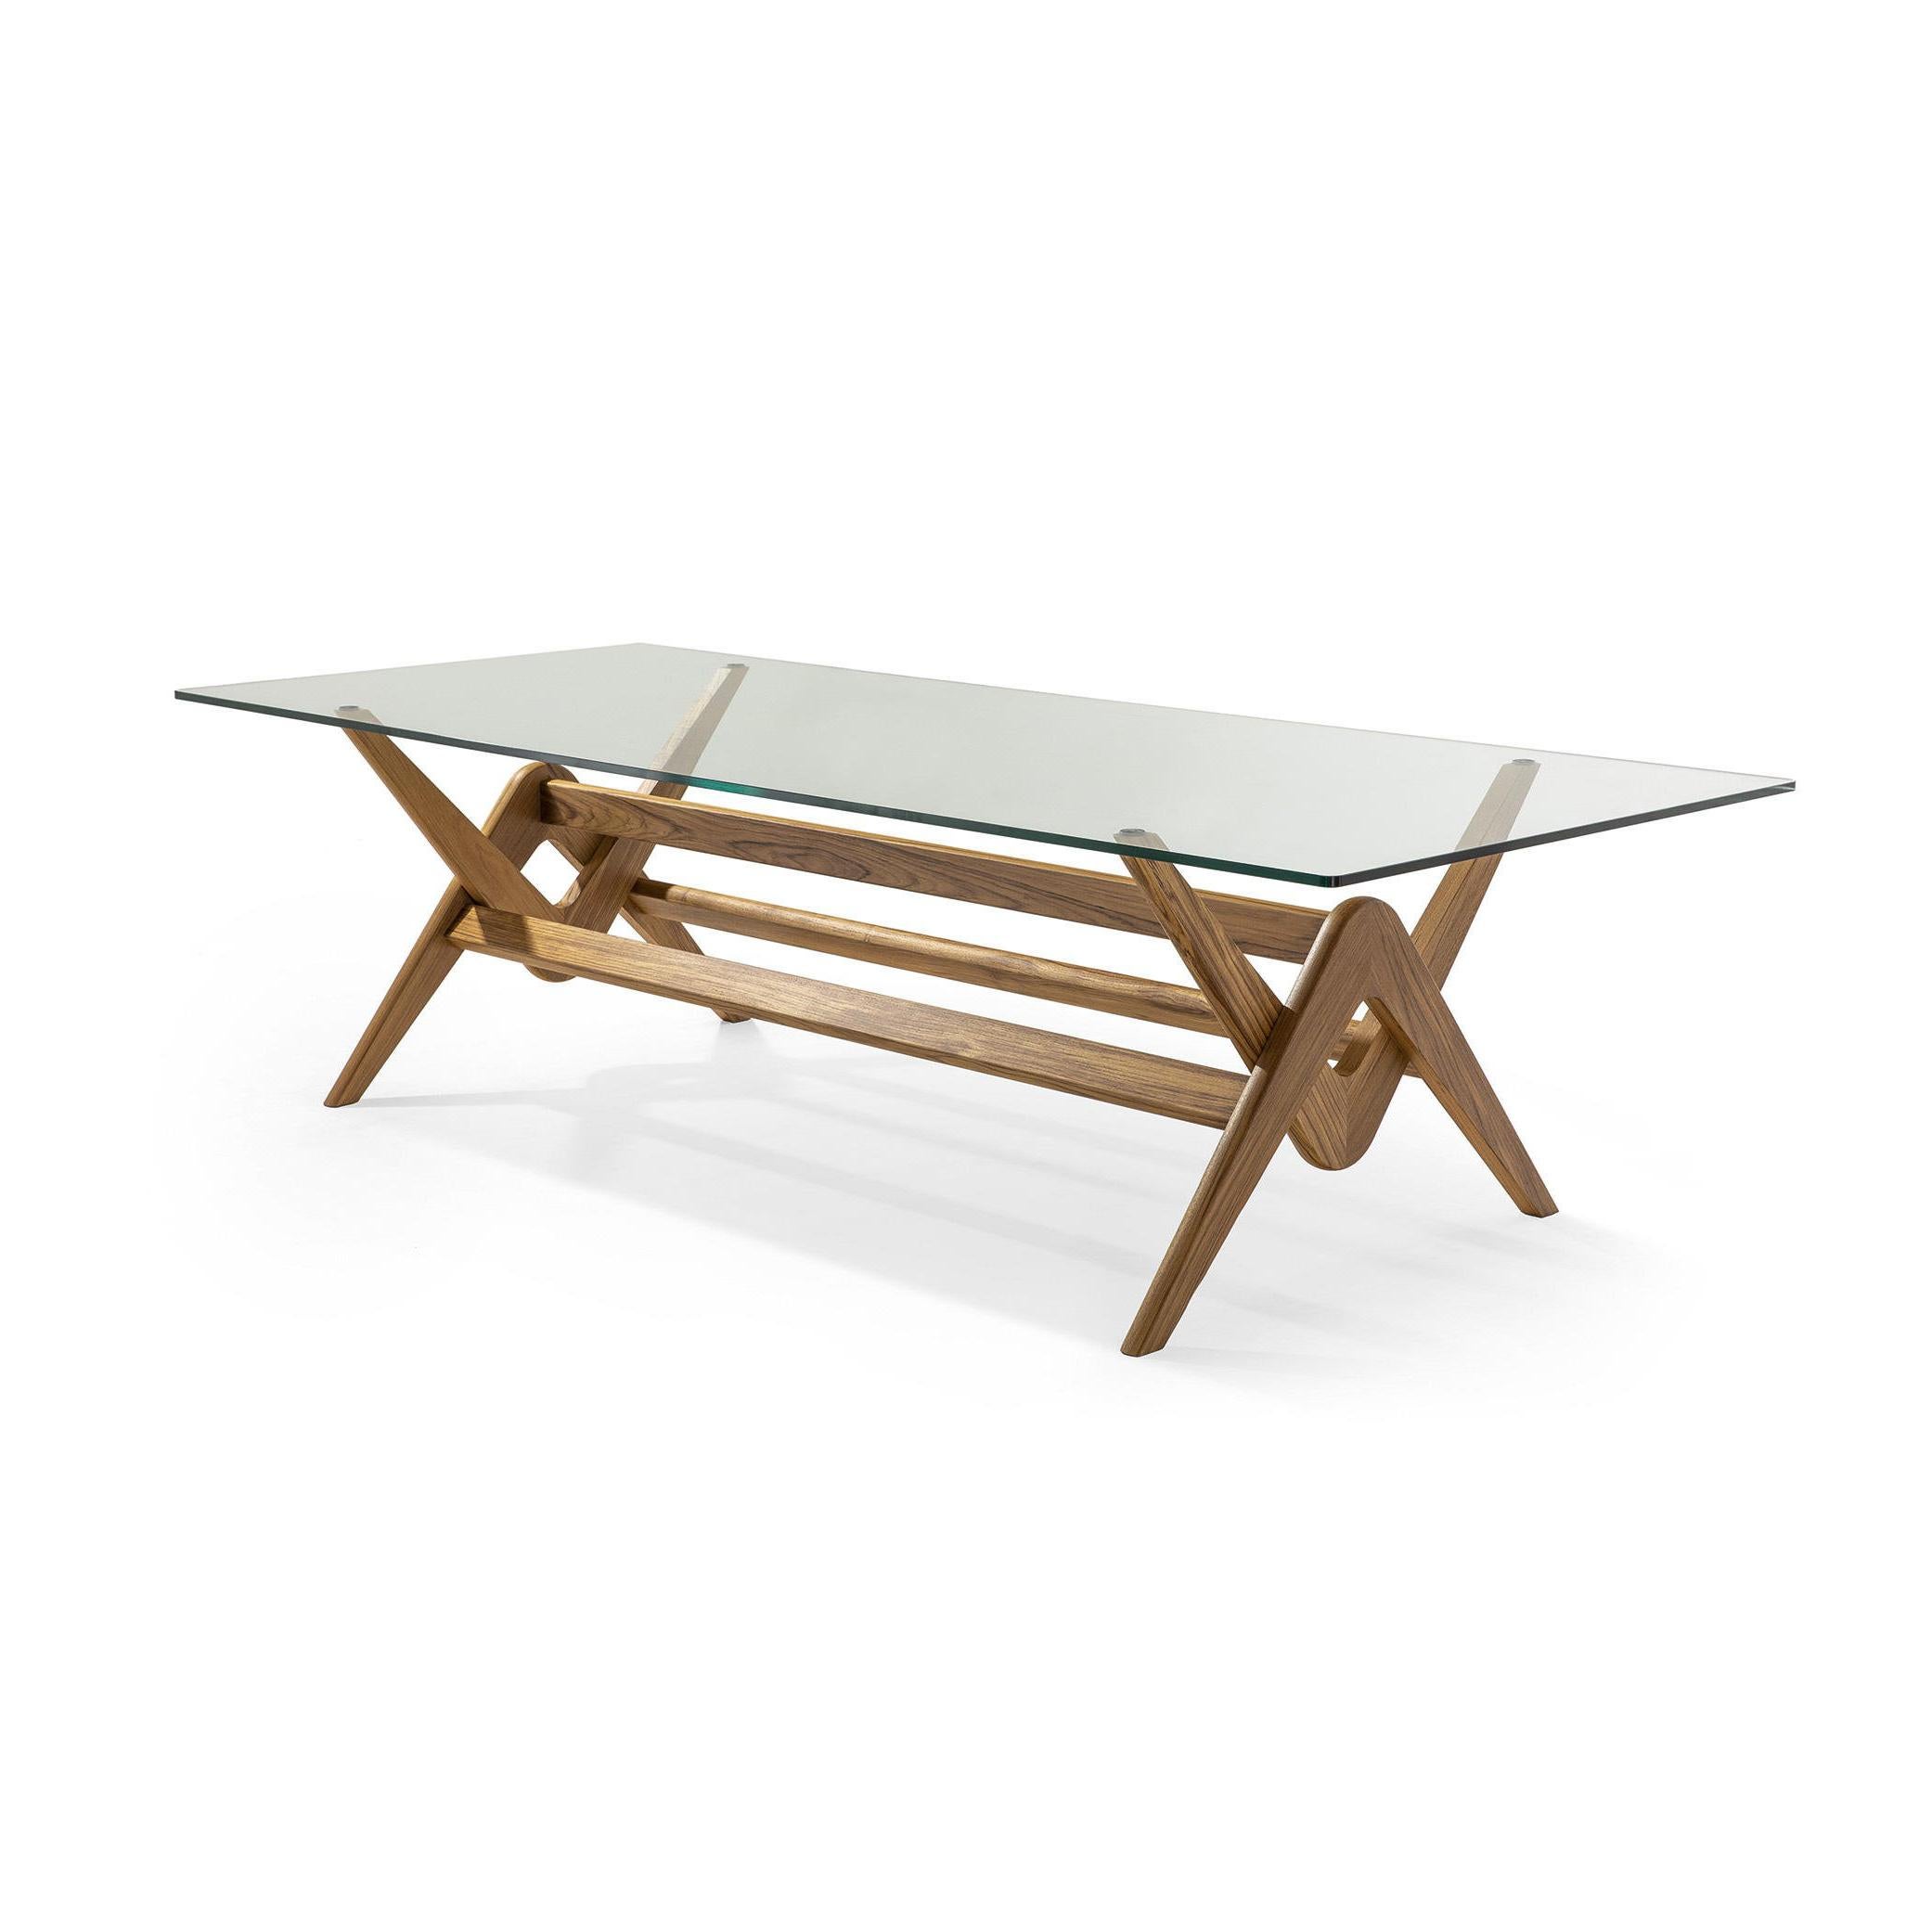 Tisch, entworfen von Pierre Jeanneret um 1950, neu aufgelegt 2019.
Hergestellt von Cassina in Italien.

Die Aufnahme in die UNESCO-Liste des Weltkulturerbes im Jahr 2016 hat großes Interesse an Le Corbusiers Capitol Complex geweckt, einem